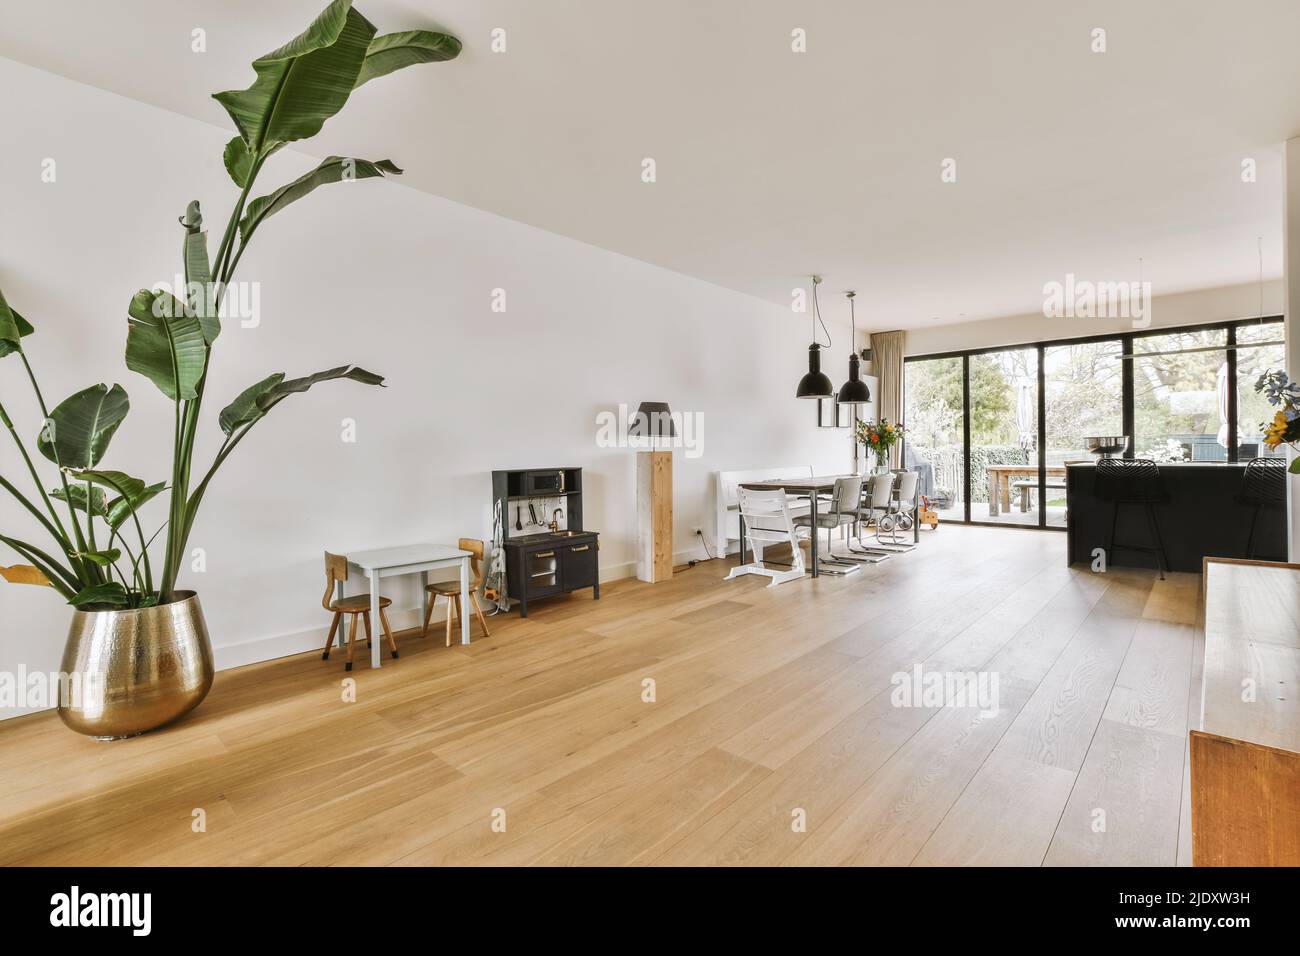 Die Einrichtung eines hellen Raums mit stilvollen Ess- und Loungebereichen in einem modernen Haus tagsüber Stockfoto